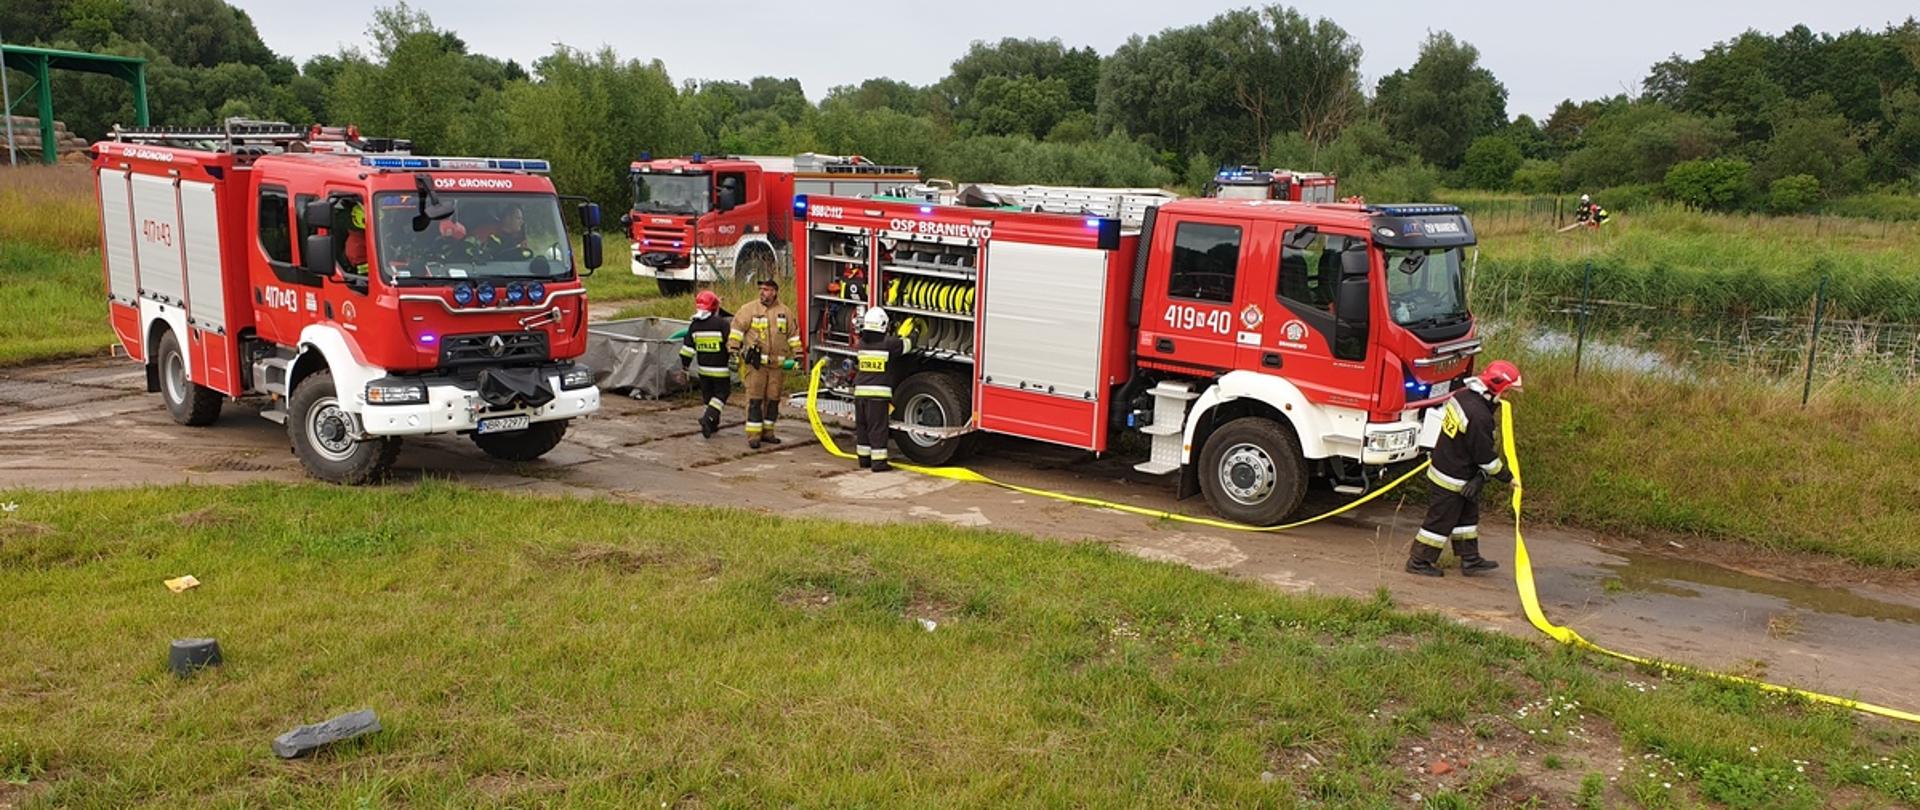 Trzy samochody strażackie ustawiają się przy zbiorniku wodnym, strażacy rozwijają węże.